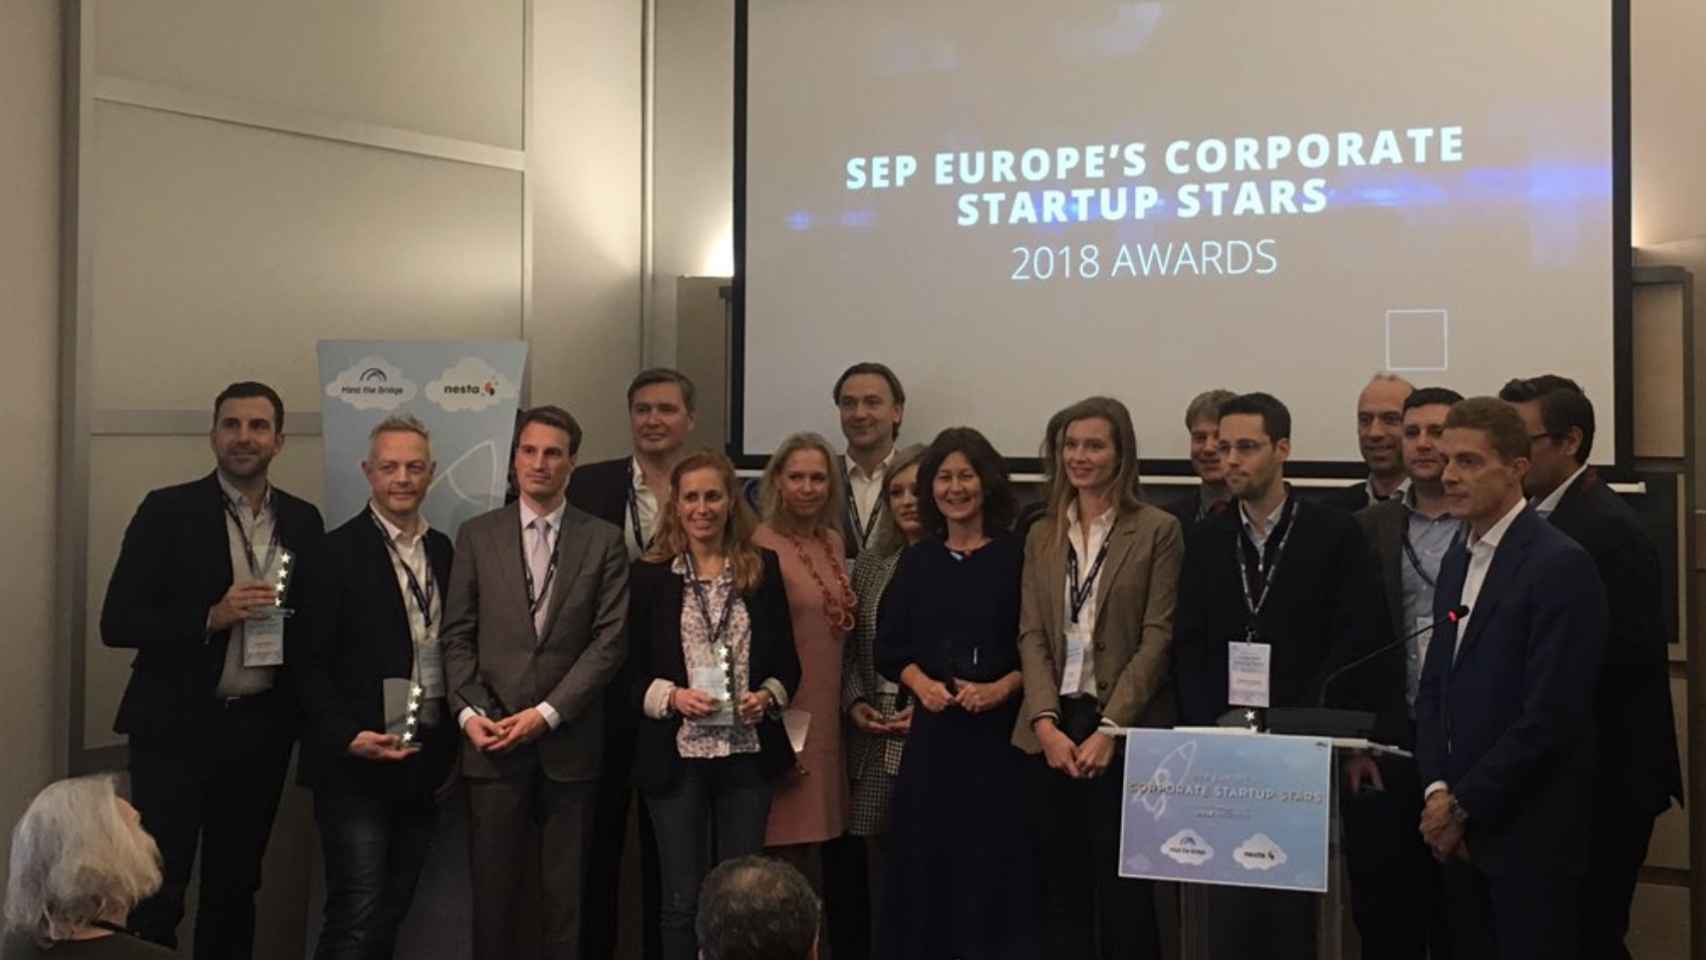 Todas las empresas premiadas por la Comisión Europea en Corporate Startup Stars 2018.